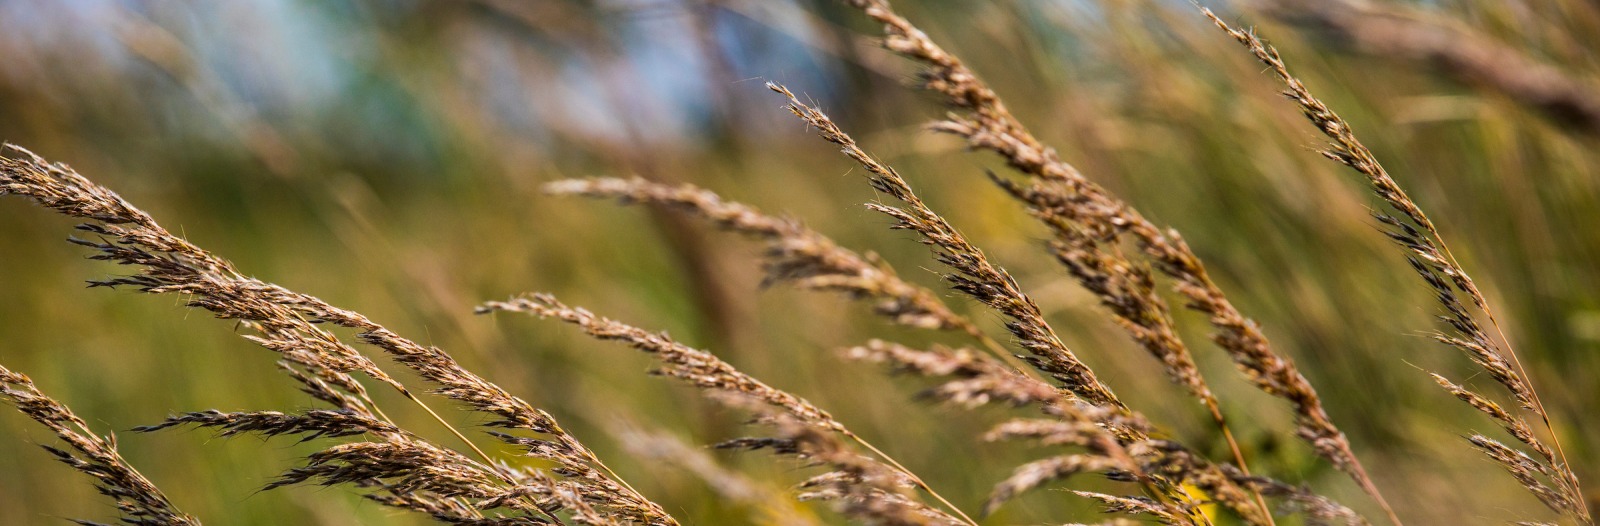 Prairie grass bent in the wind